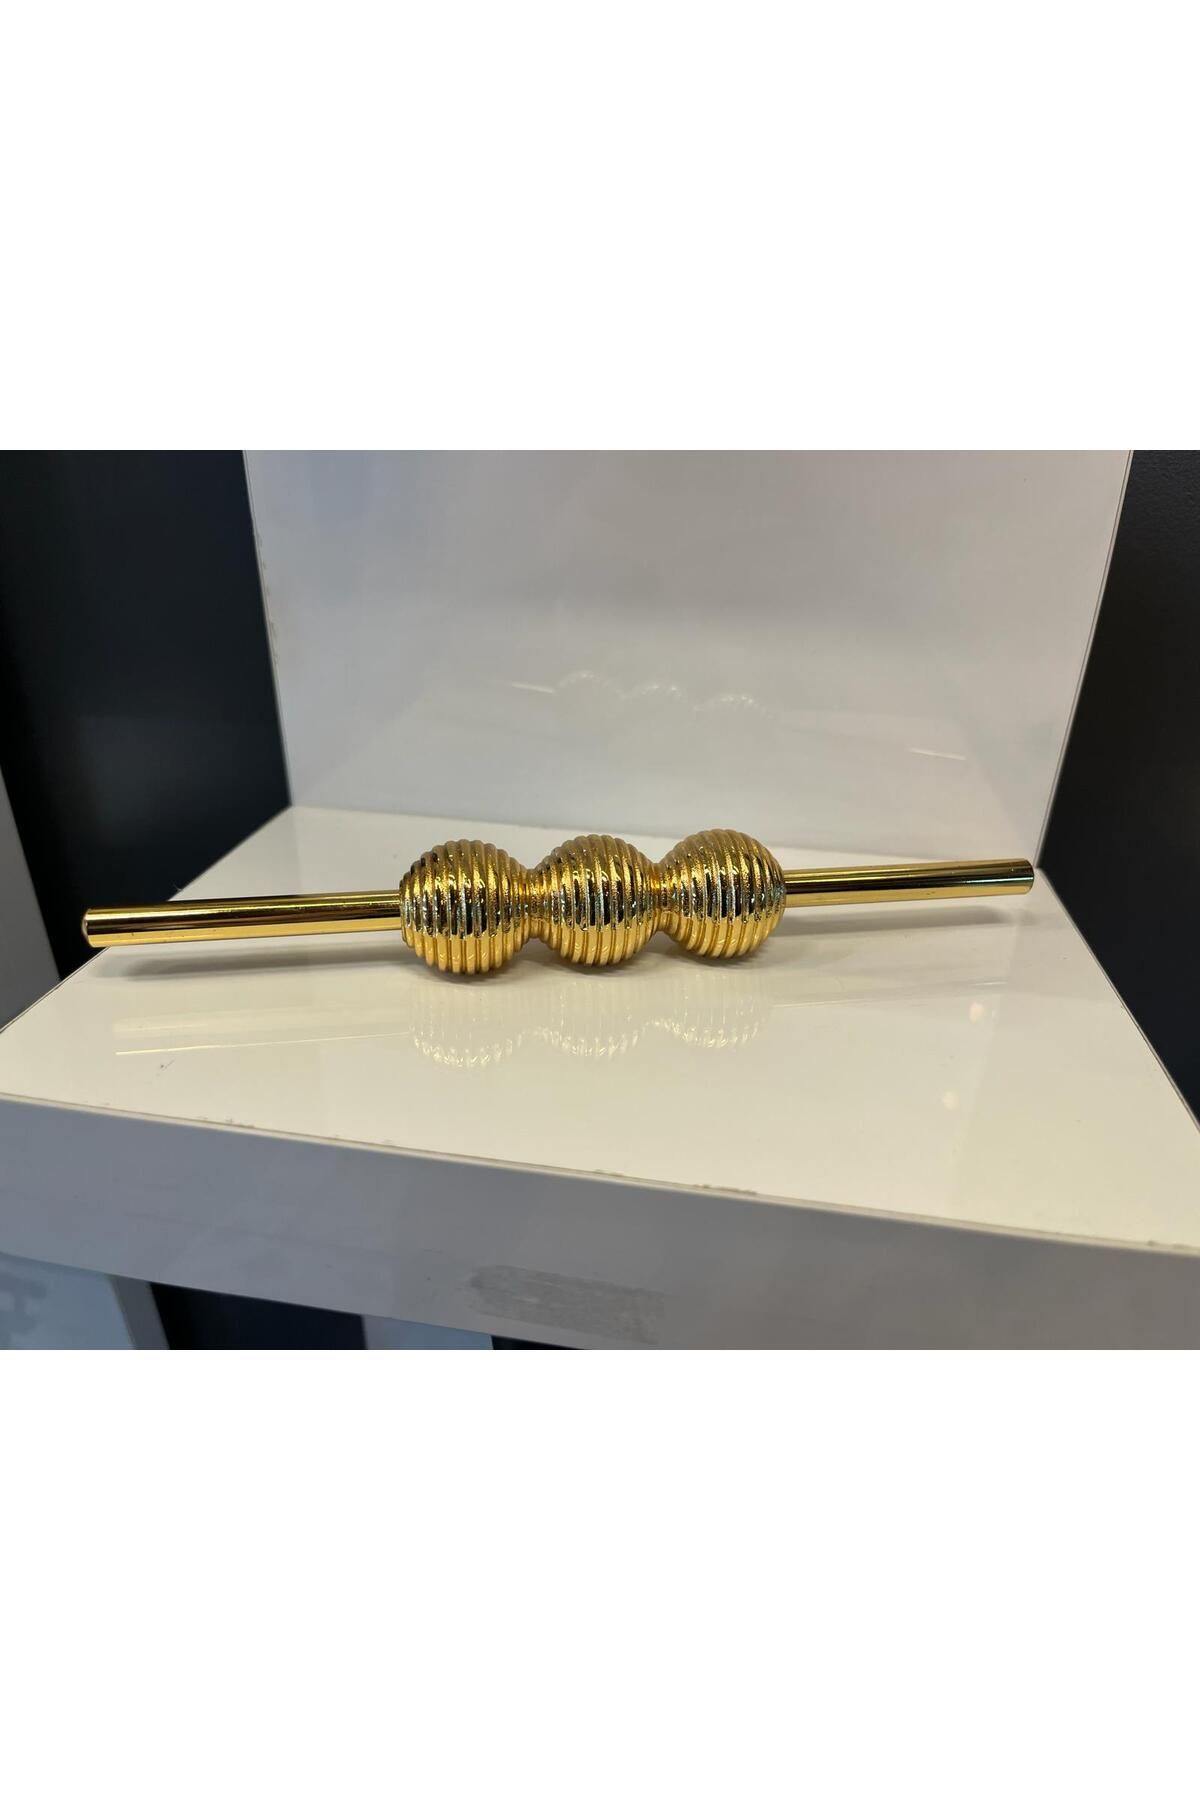 Emaks Petra Ortalı Çizgili Metal Kulp 32mm Altın Dolap Kapak Tv Ünite Mutfak Modern Çekmece Mobilya Gold